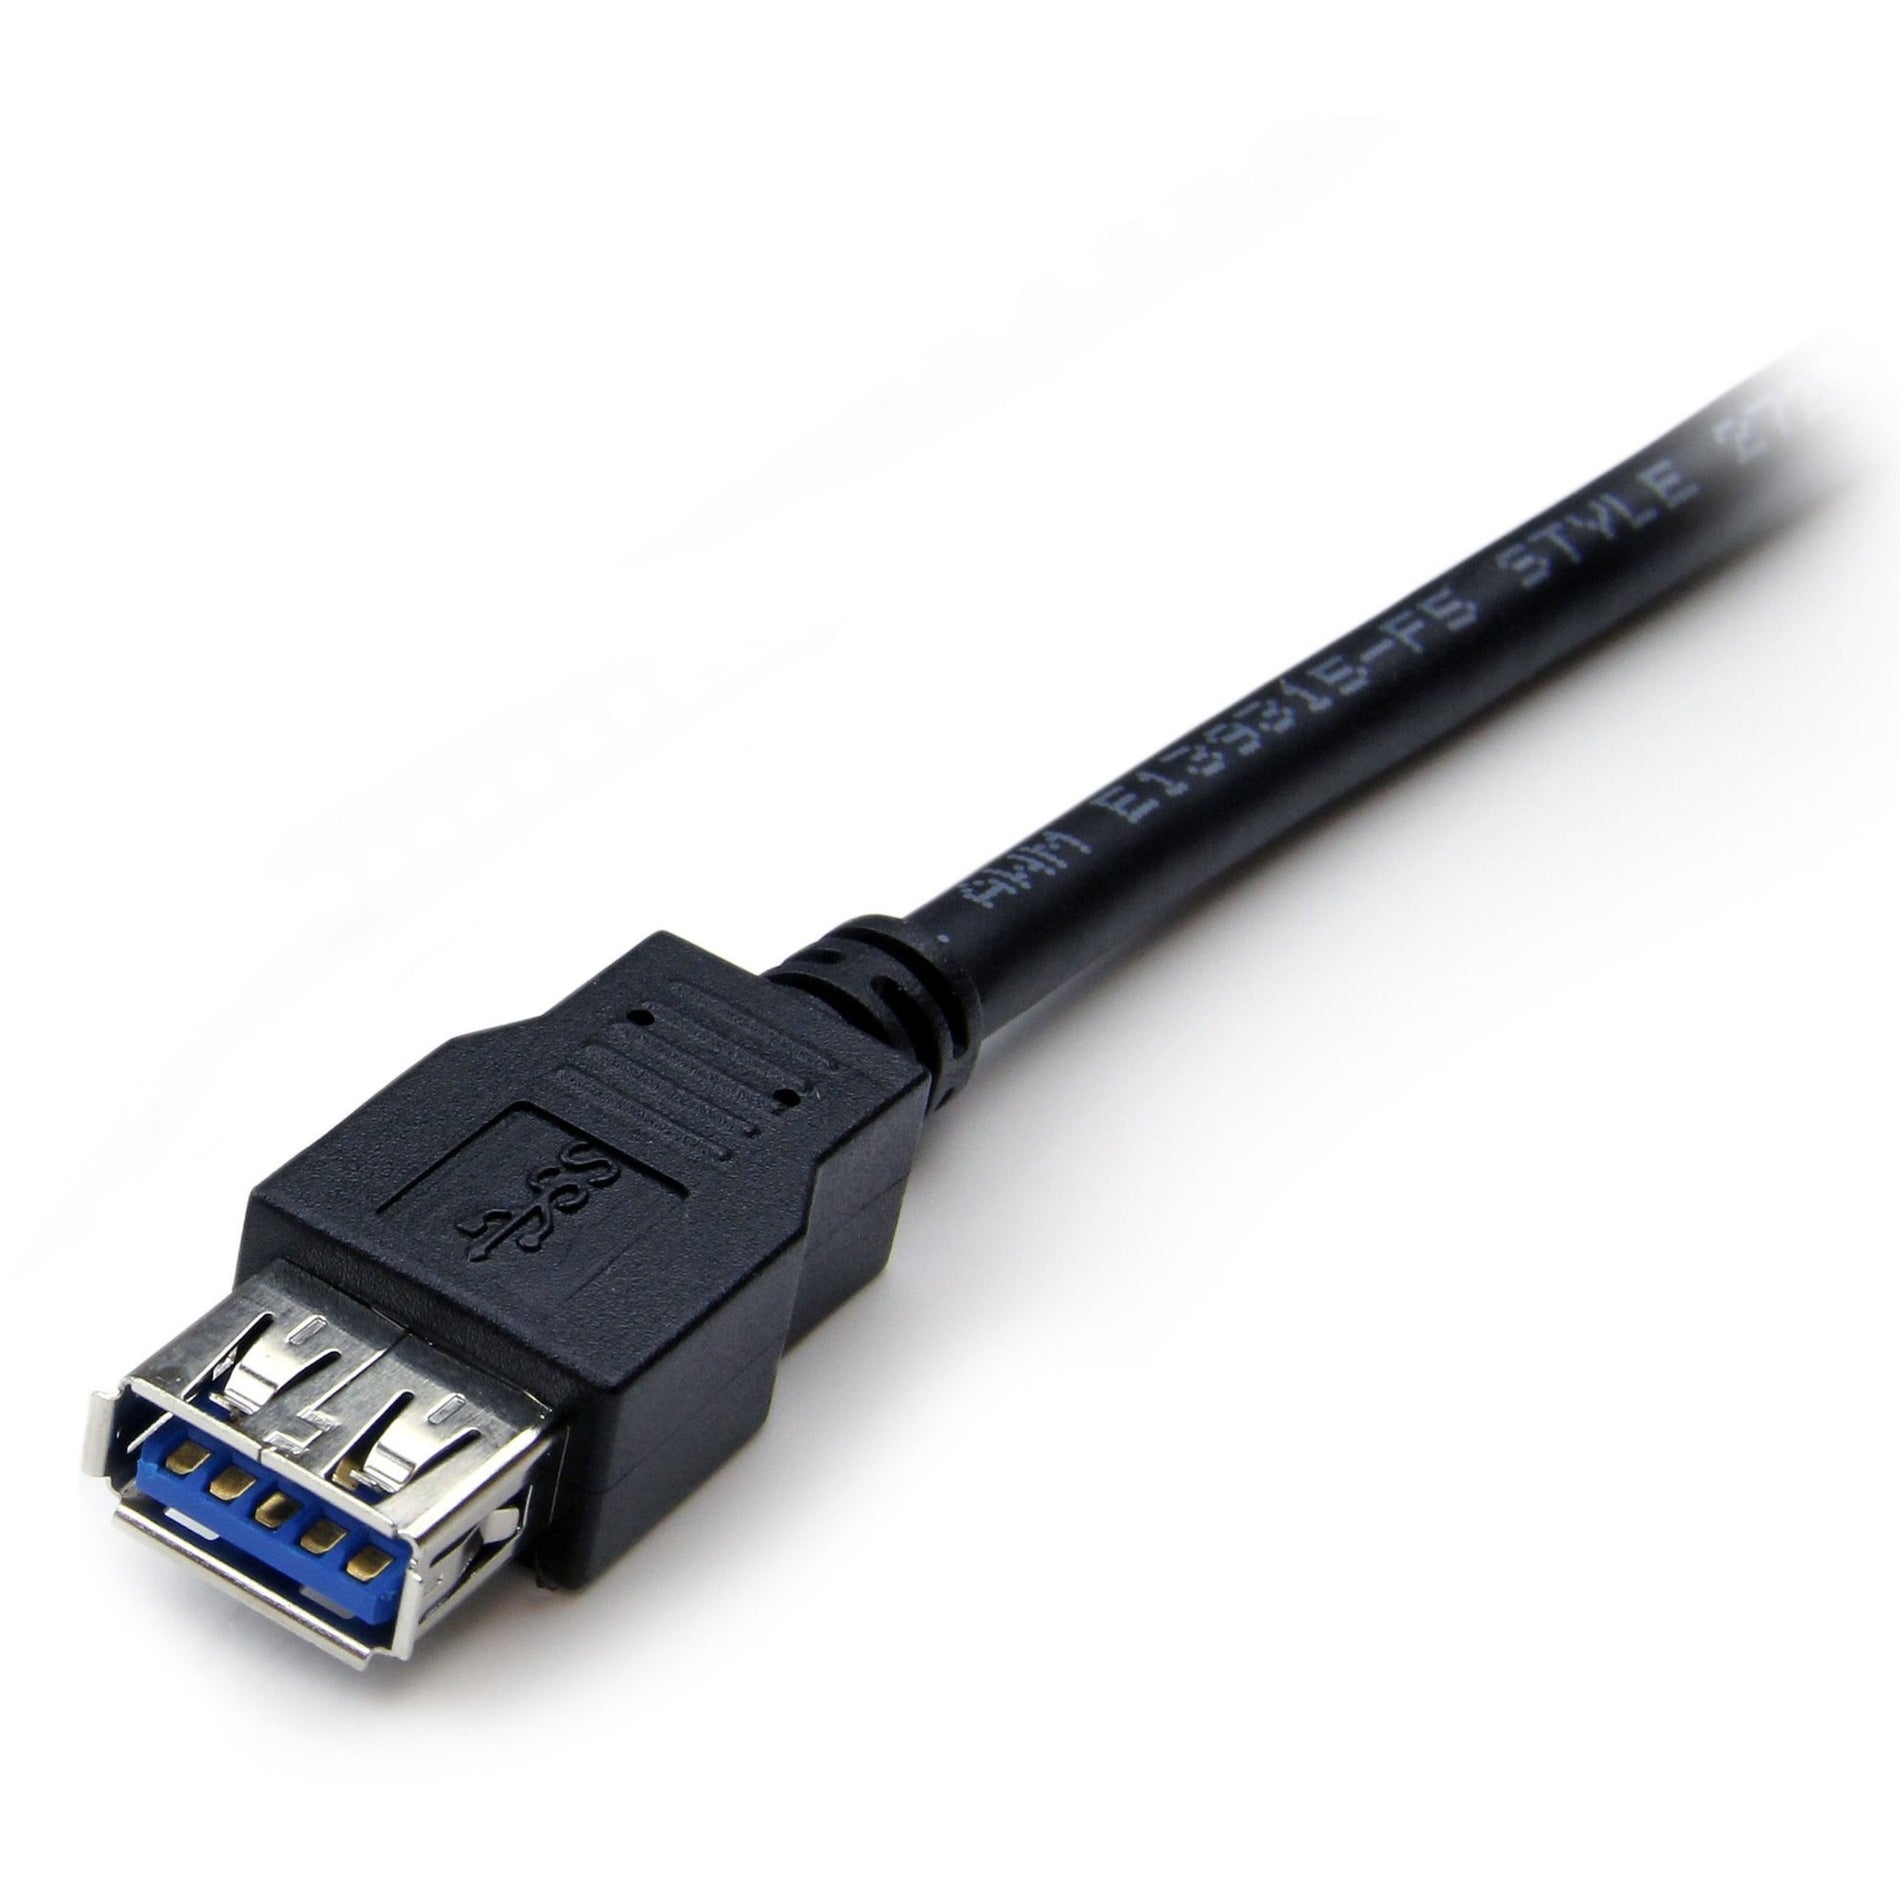 كابل تمديد USB 3.0 نوع A إلى نوع A - ذكر/أنثى بطول 6 أقدام باللون الأسود من StarTech.com، نقل بيانات عالية السرعة، ضمان مدي الحياة